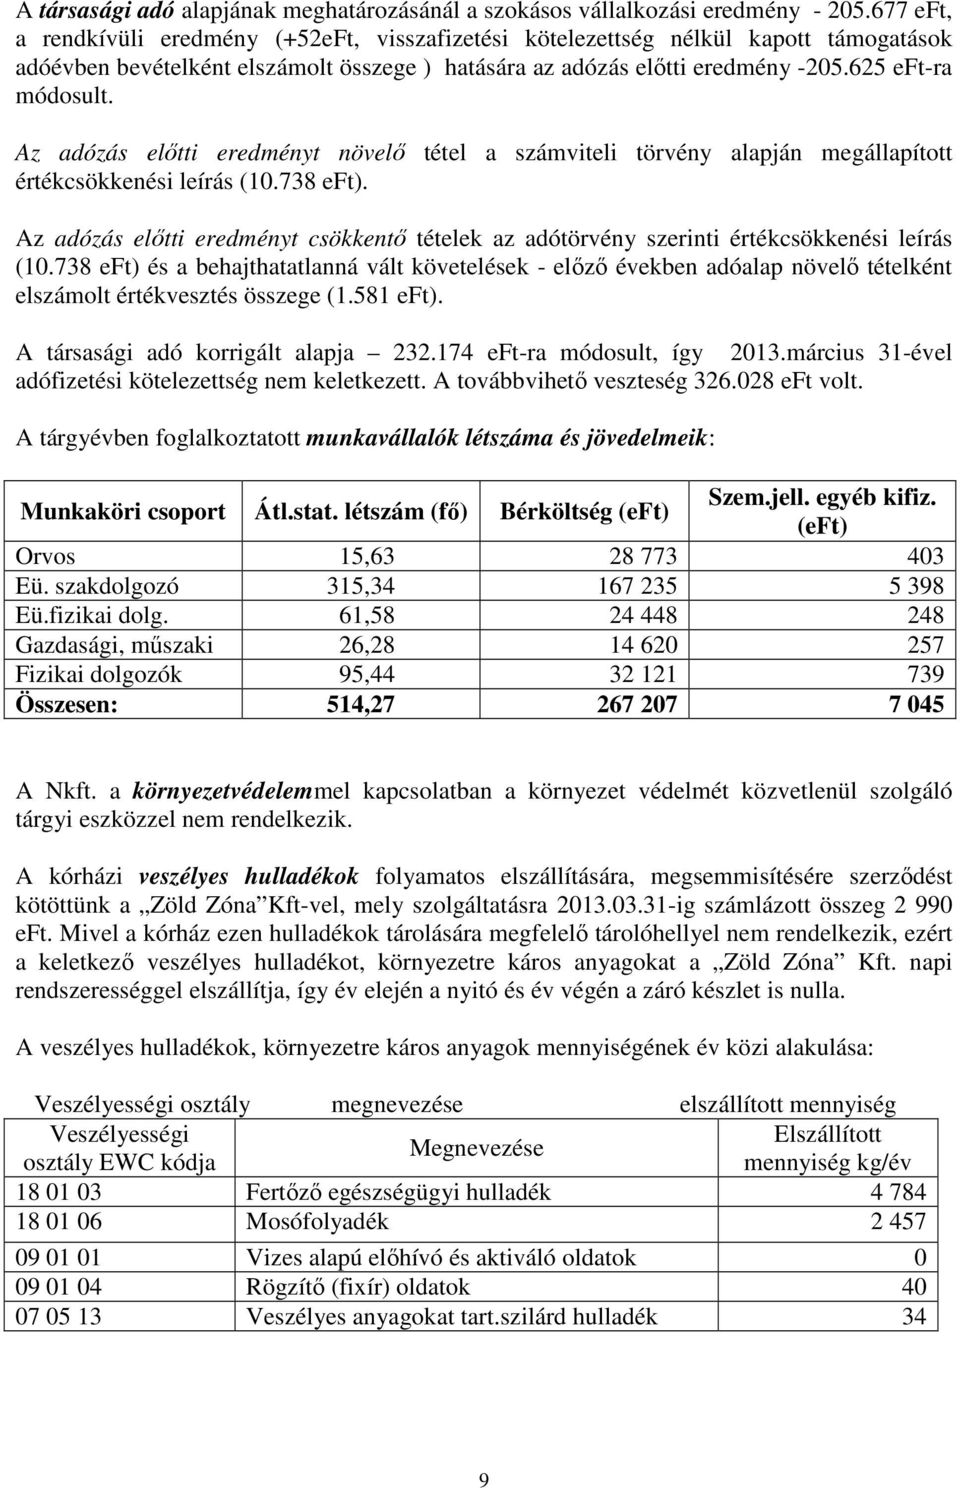 Az adózás elıtti eredményt növelı tétel a számviteli törvény alapján megállapított értékcsökkenési leírás (10.738 eft).